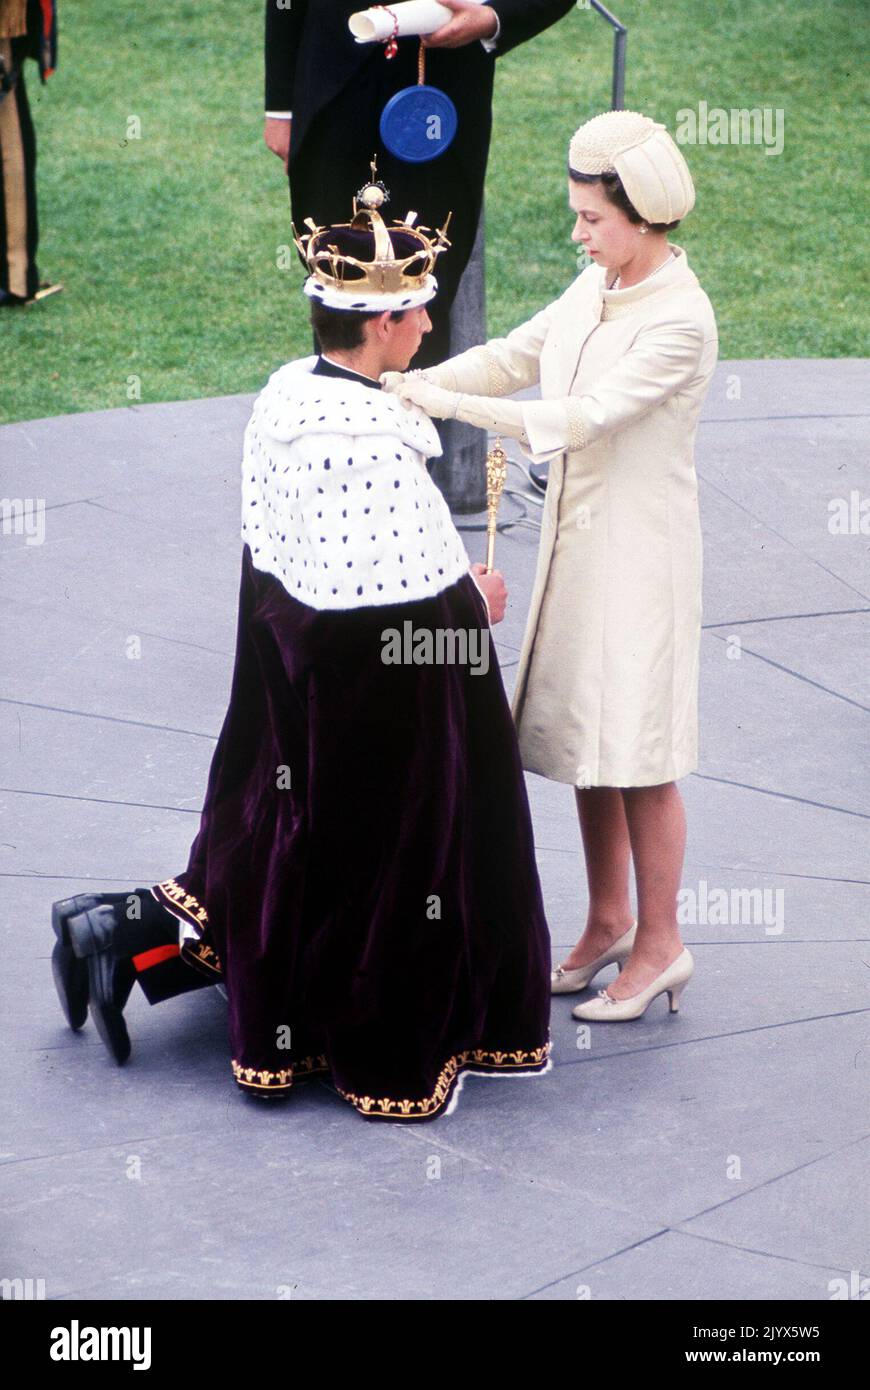 Datei-Foto vom 01/07/1969 von Königin Elizabeth II., die das Gewand von Prinz Charles während seiner Investitur als Prinz von Wales in Caernarfon Castle anpasst. Wie Buckingham Palace mitteilte, starb die Königin heute Nachmittag friedlich in Balmoral. Ausgabedatum: Donnerstag, 8. September 2022. Stockfoto